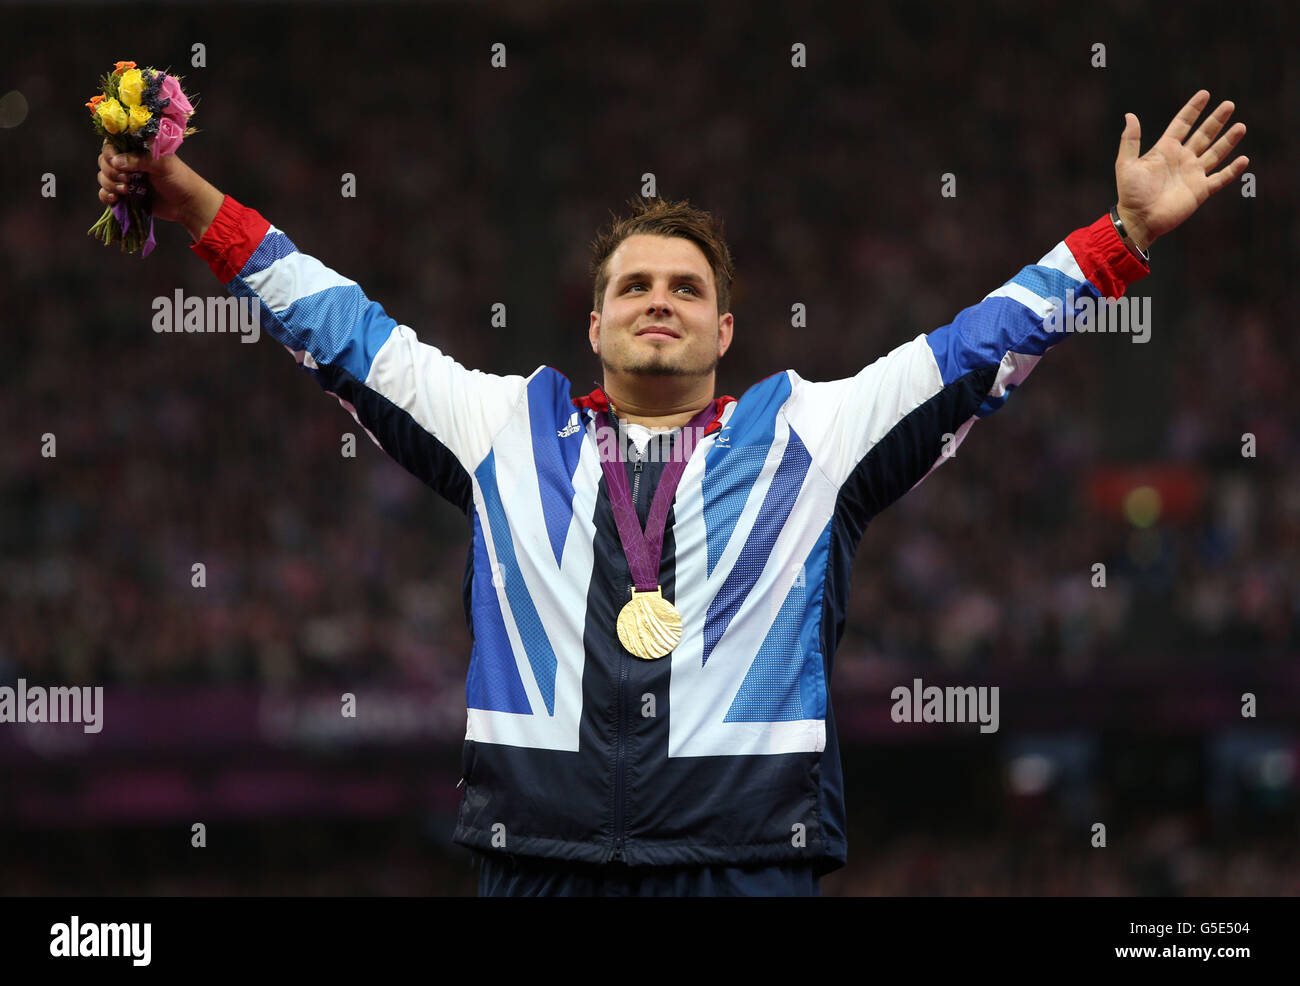 Jeux paralympiques de Londres - jour 4.Aled Davies, en Grande-Bretagne, célèbre la médaille d'or du Plaid Discus pour hommes - F42 au stade olympique de Londres. Banque D'Images